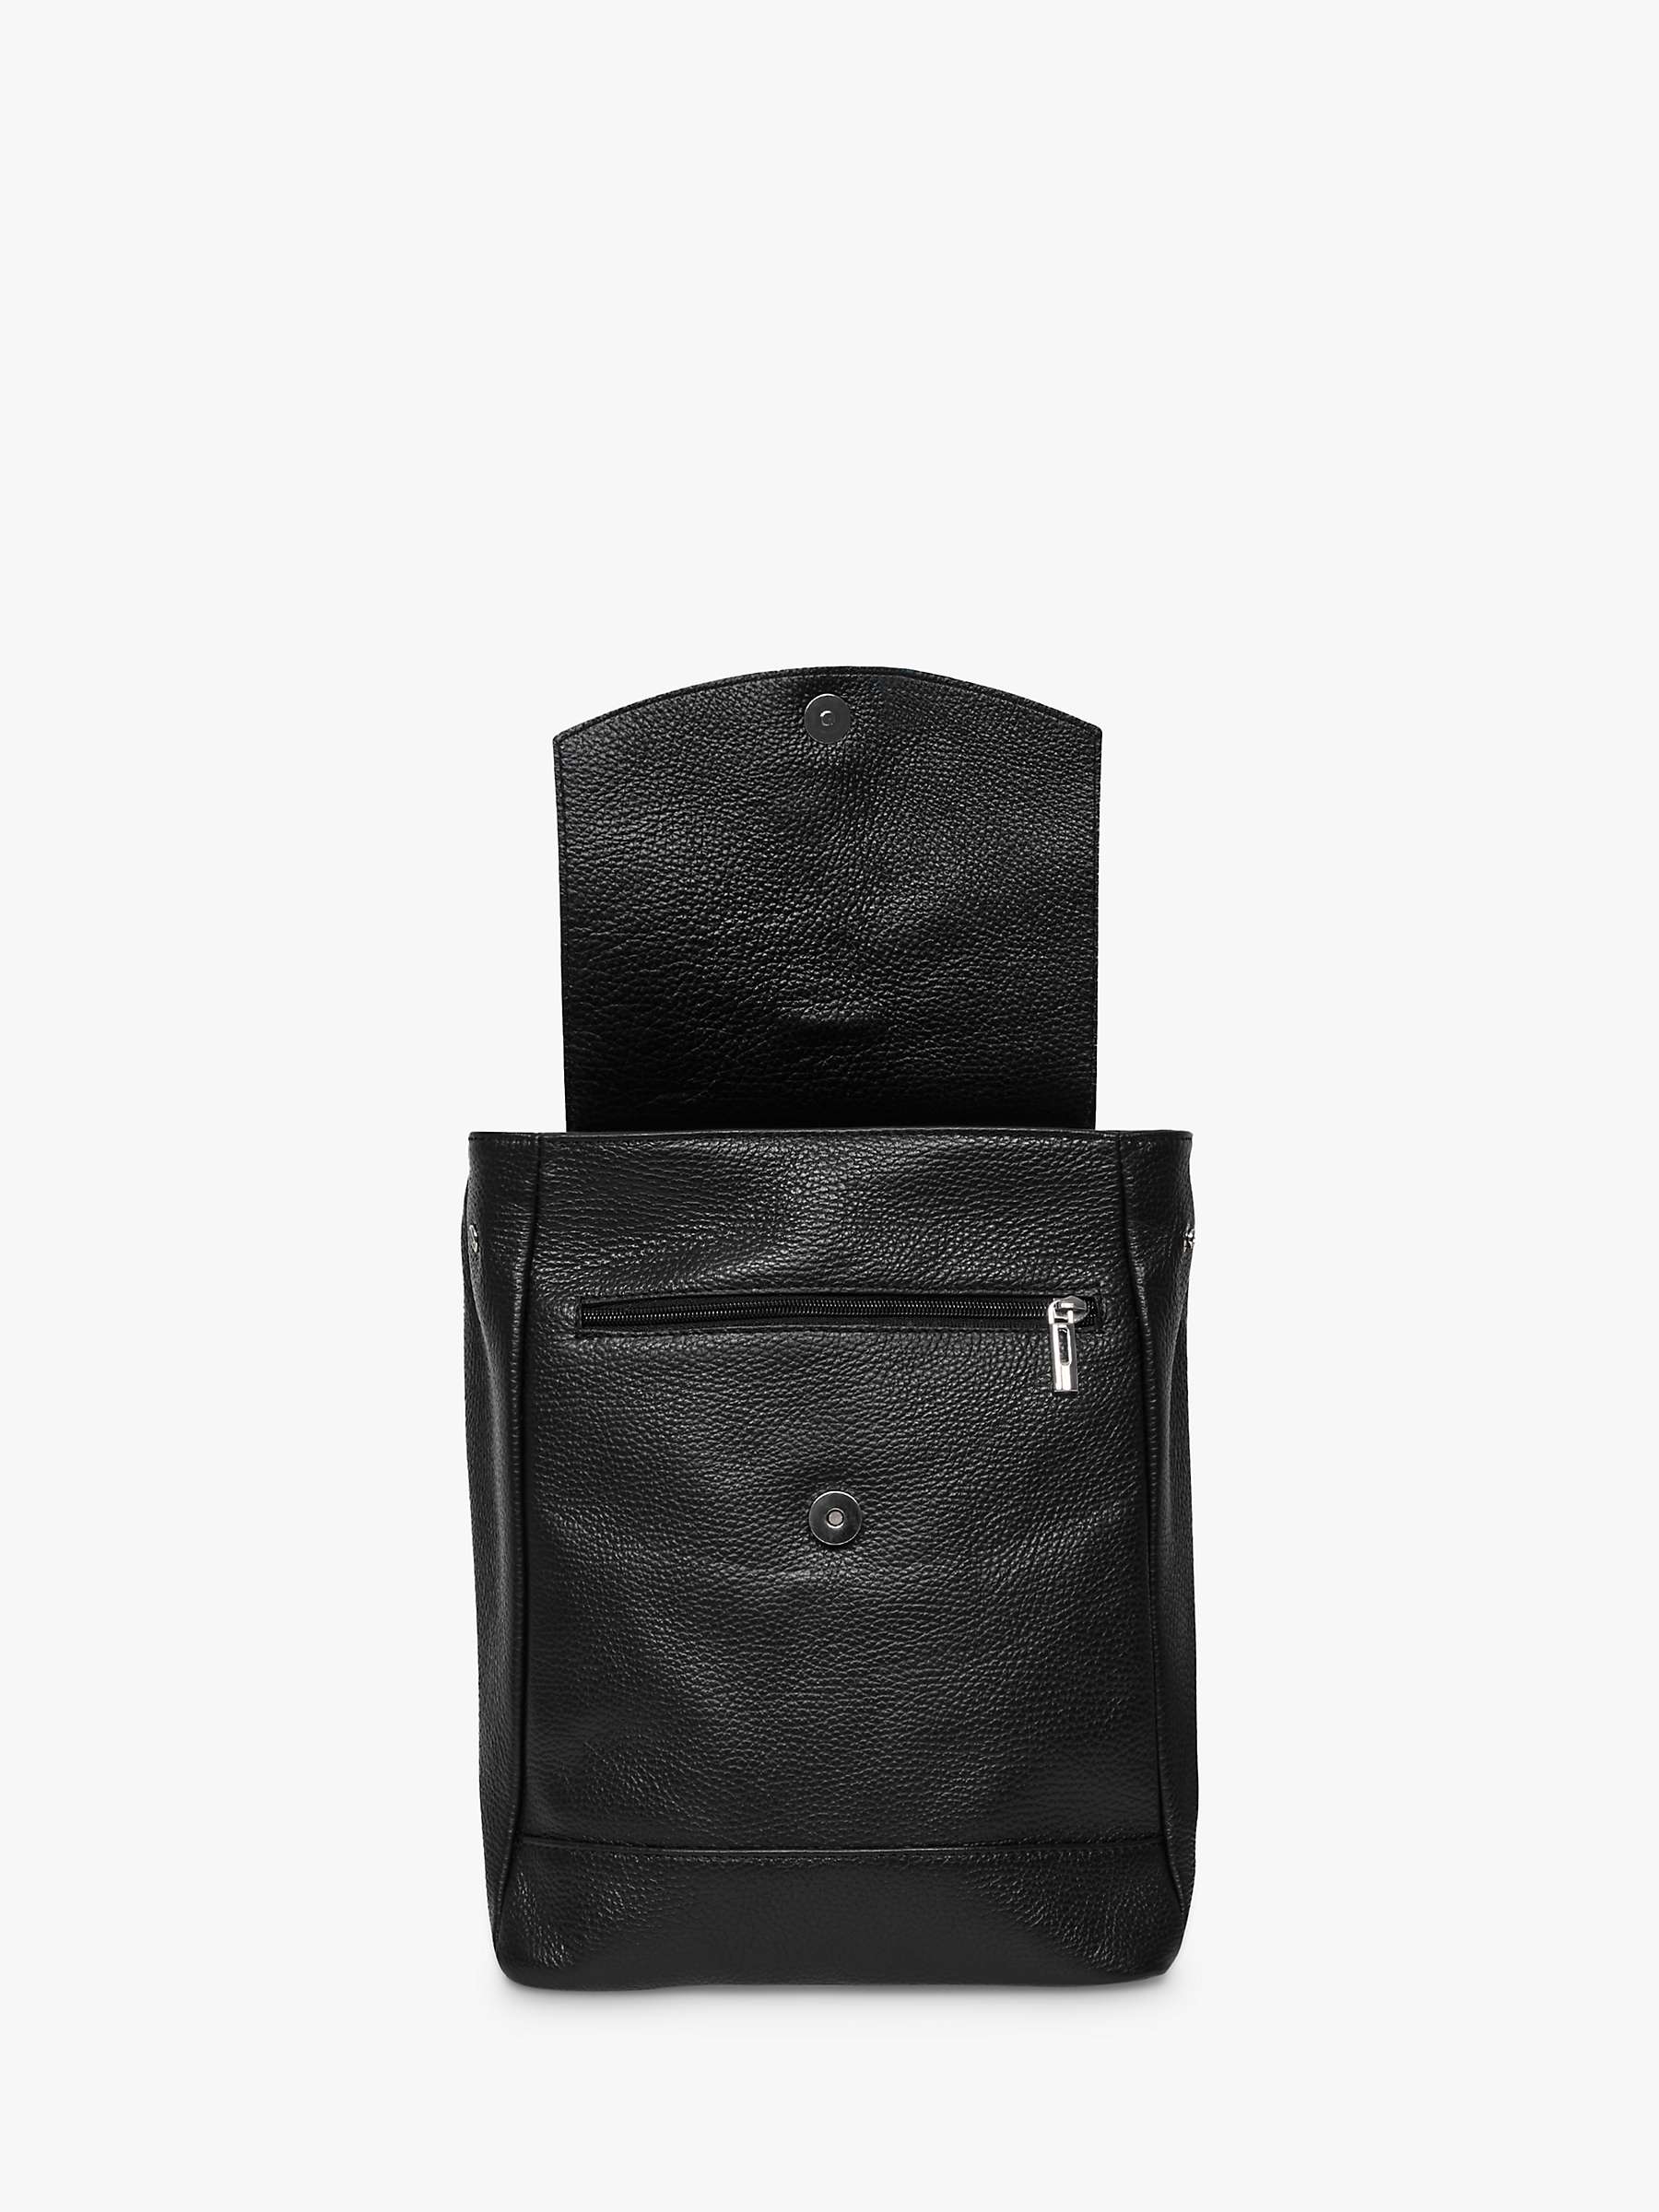 Buy Celtic & Co. Leather Tassel Backpack, Black Online at johnlewis.com